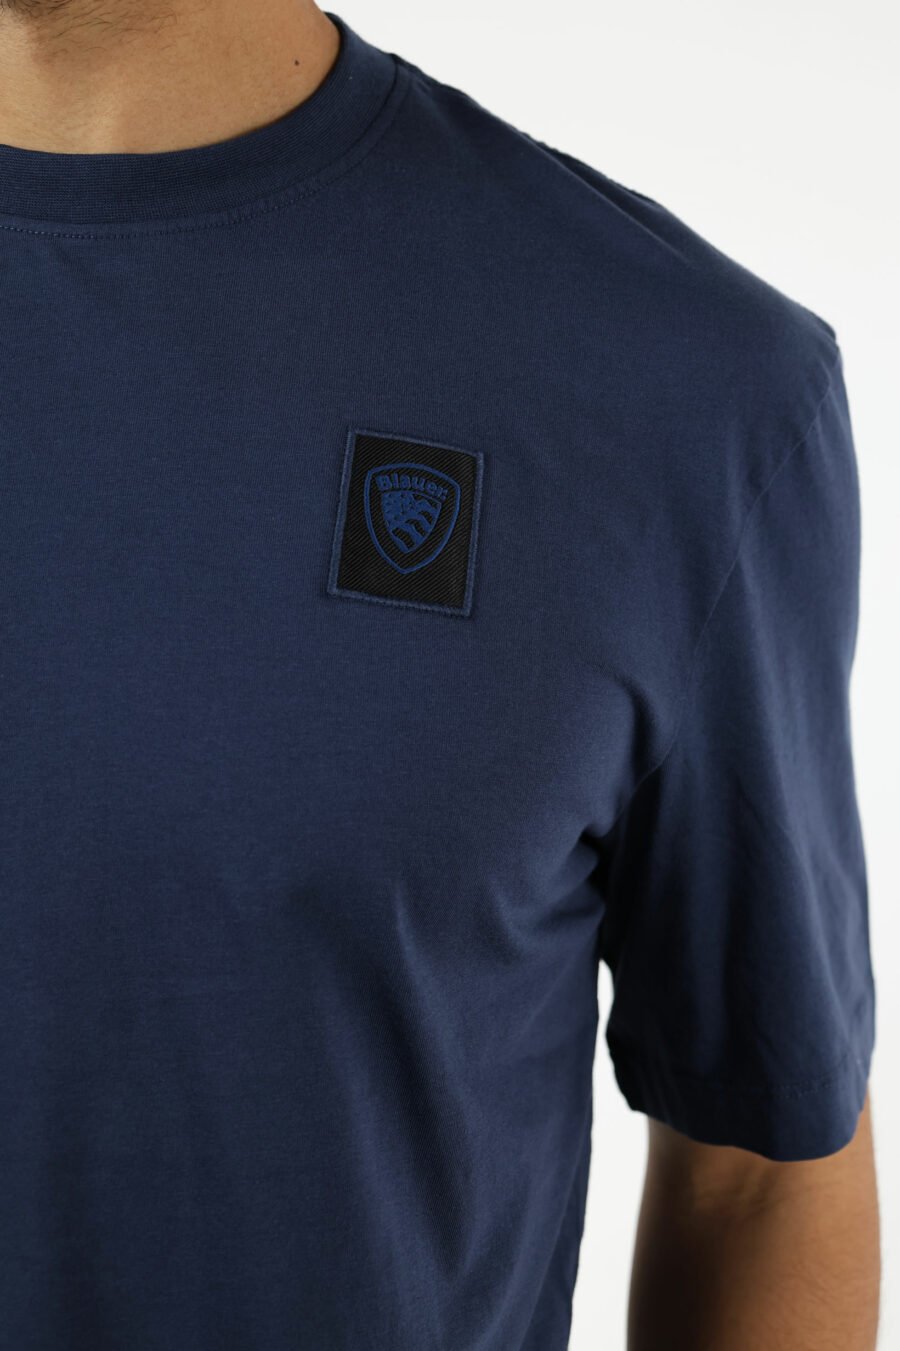 Camiseta azul con minilogo escudo bordado - 111107